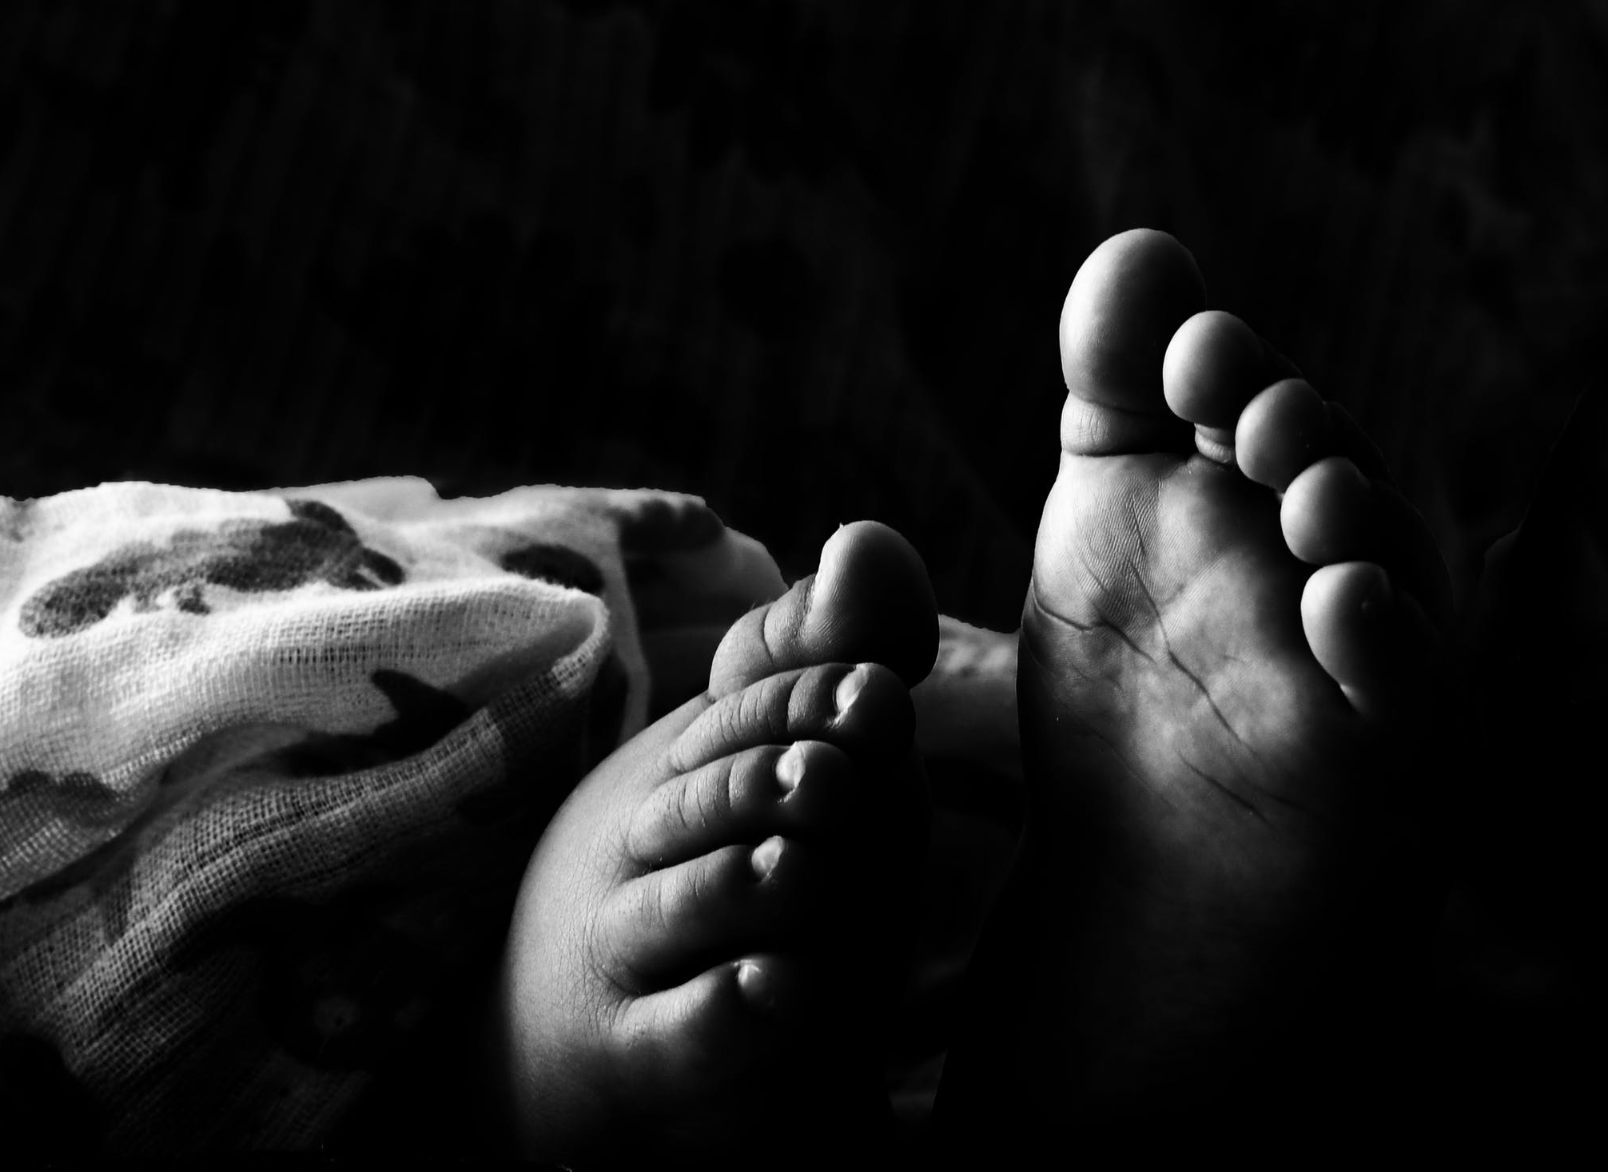 Ребенок скончался из-за осложнений, не связанных с основным заболеванием Фото: © pxhere.com